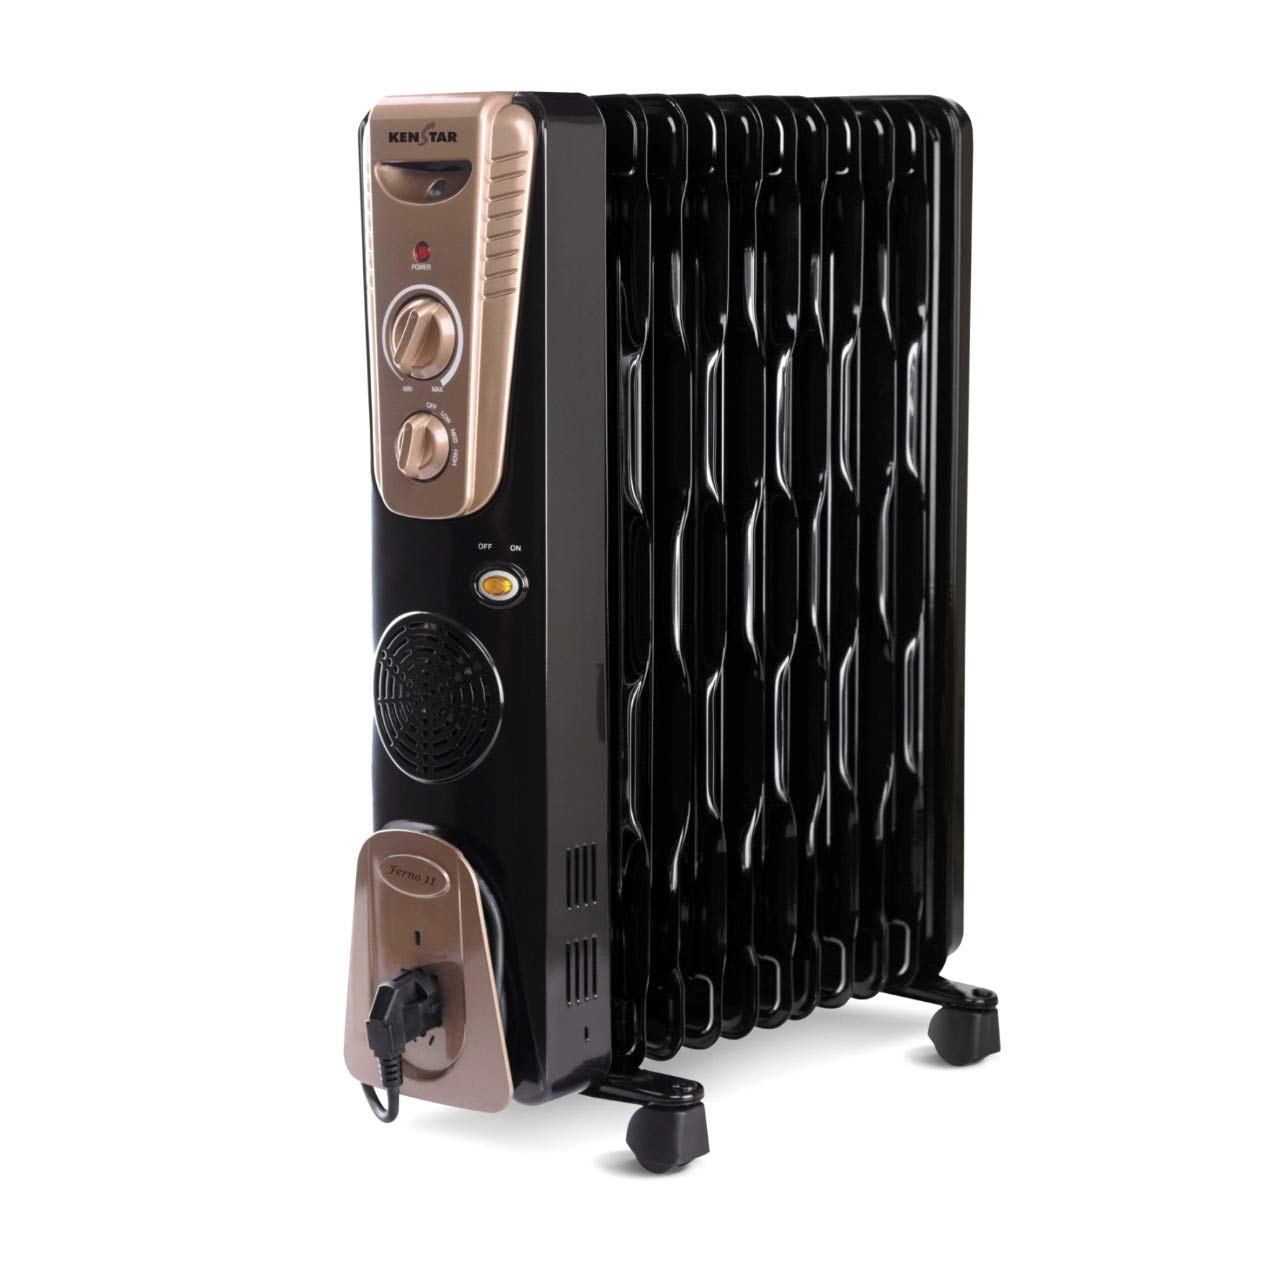 kenstar-oil-filled-radiator-11-fins-with-ptc-fan-heaters-in-india